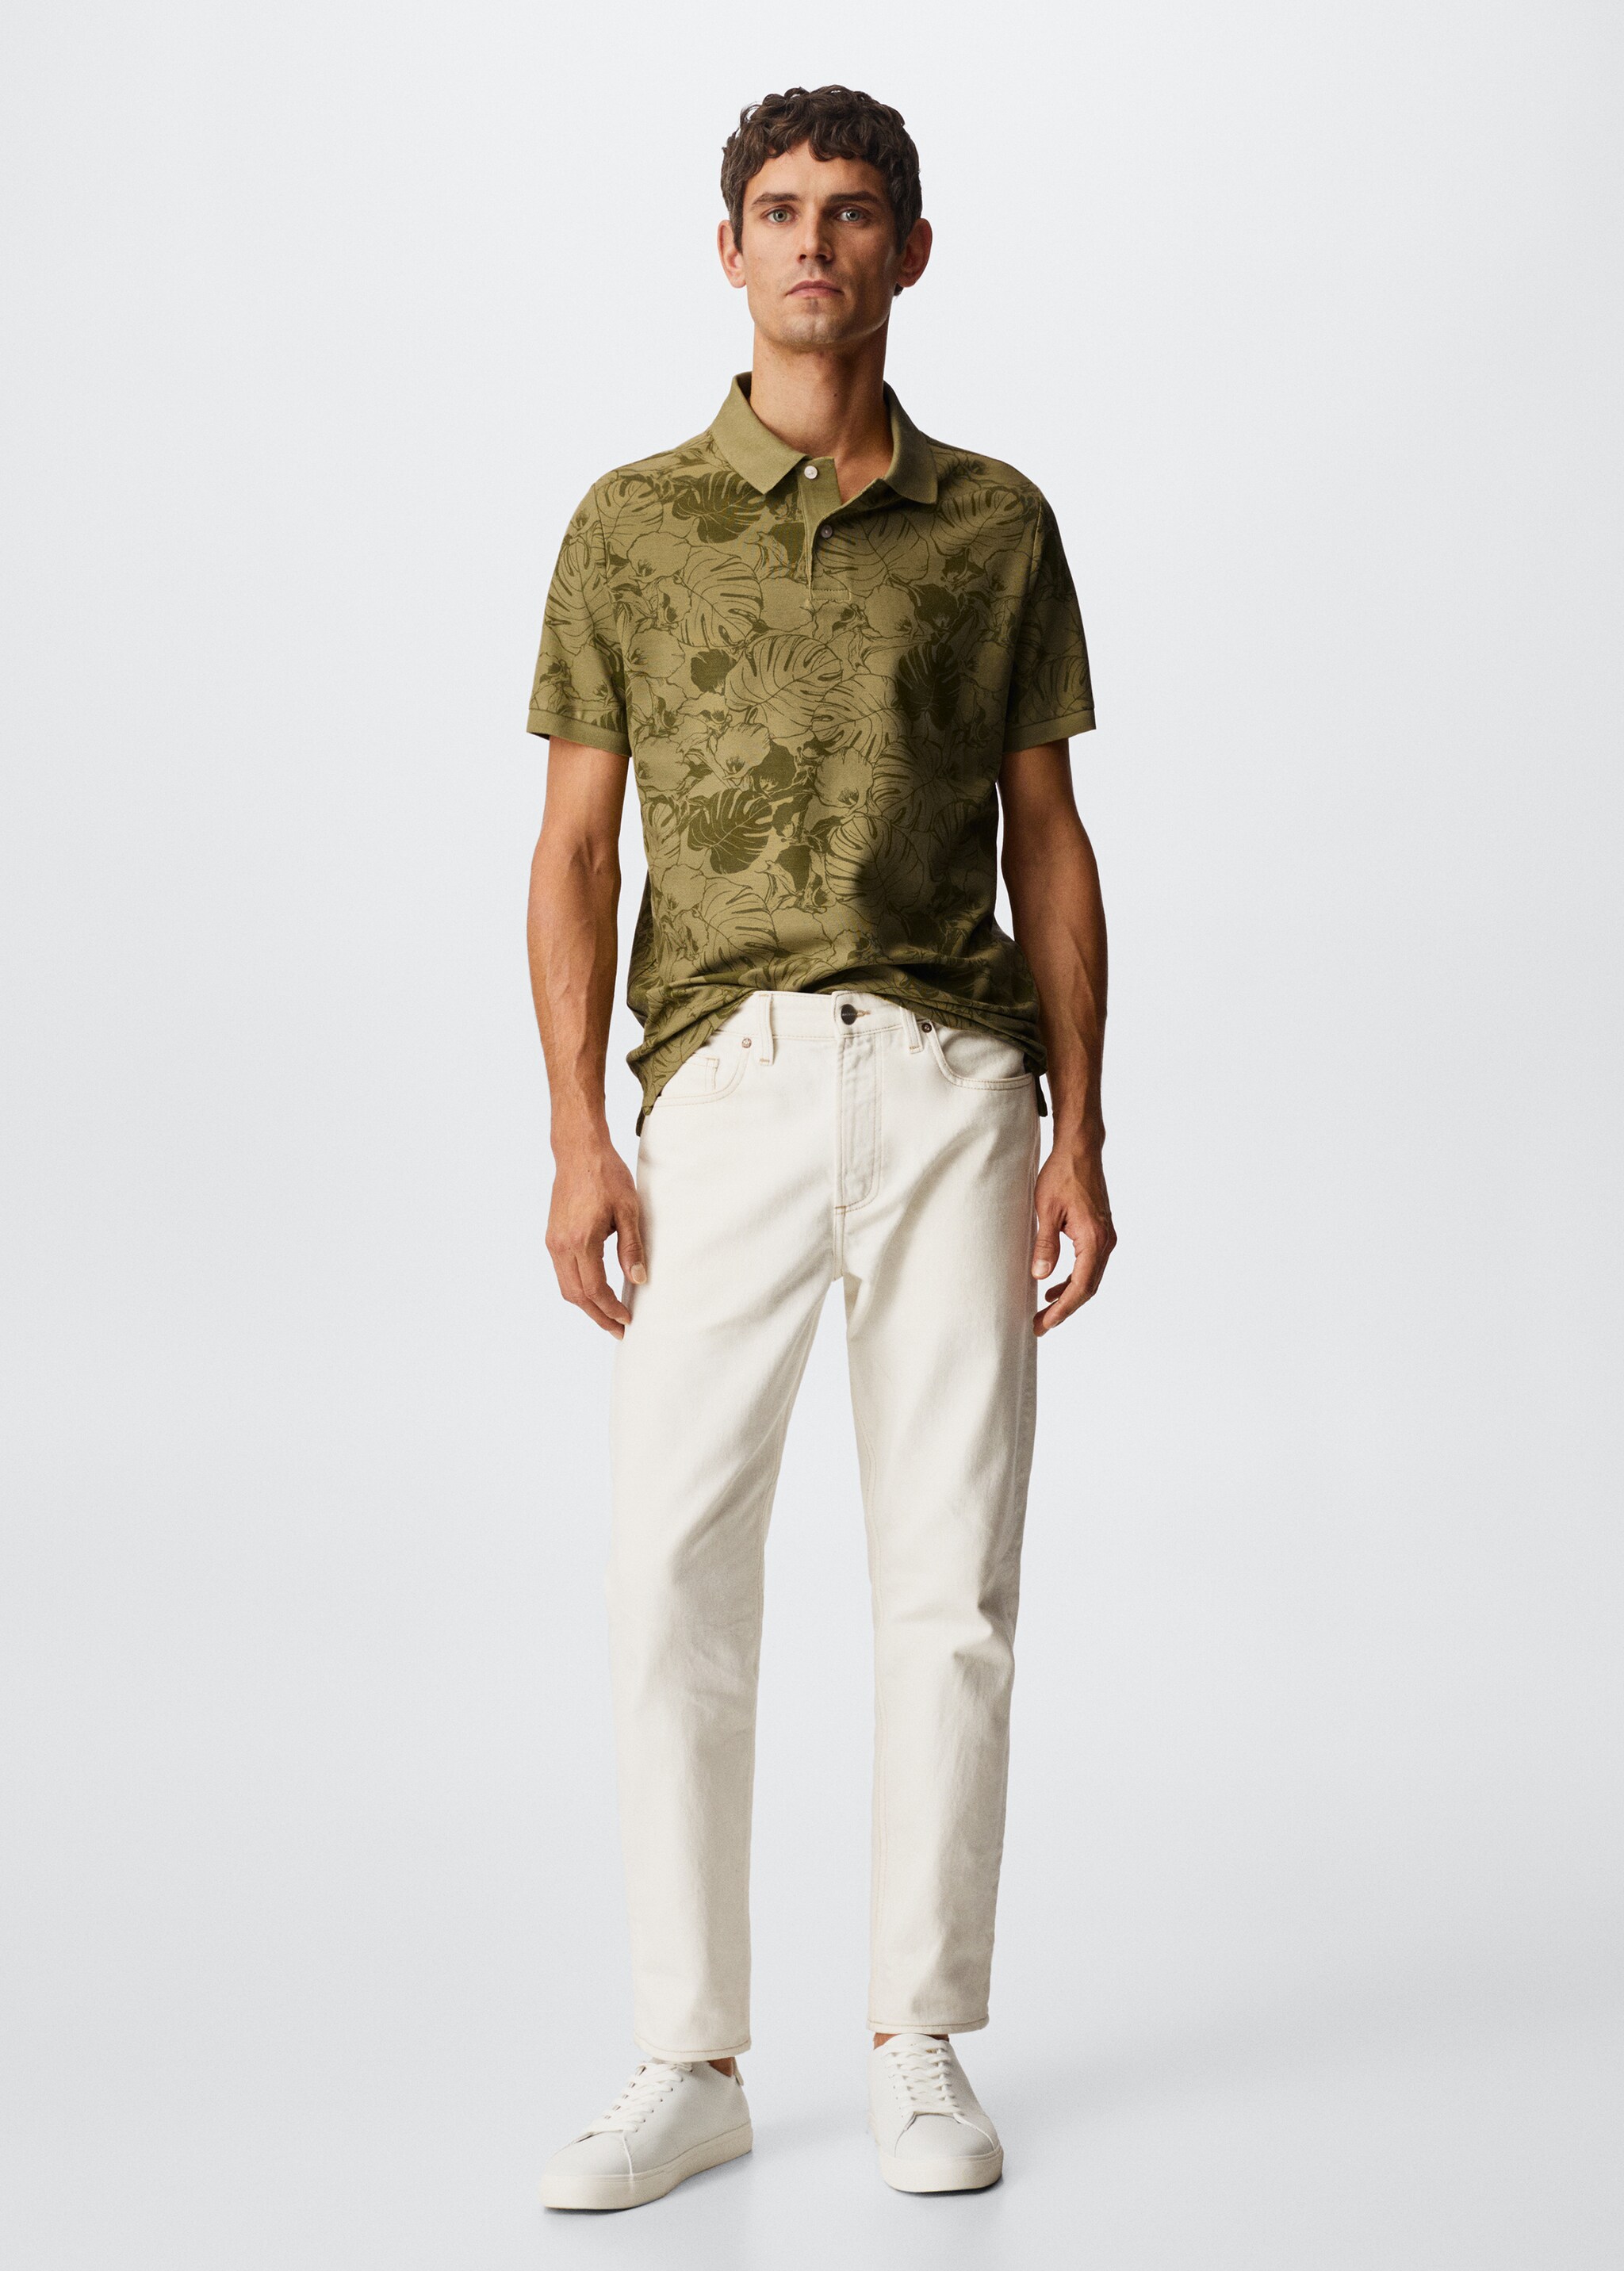 Tropical print cotton polo shirt - General plane